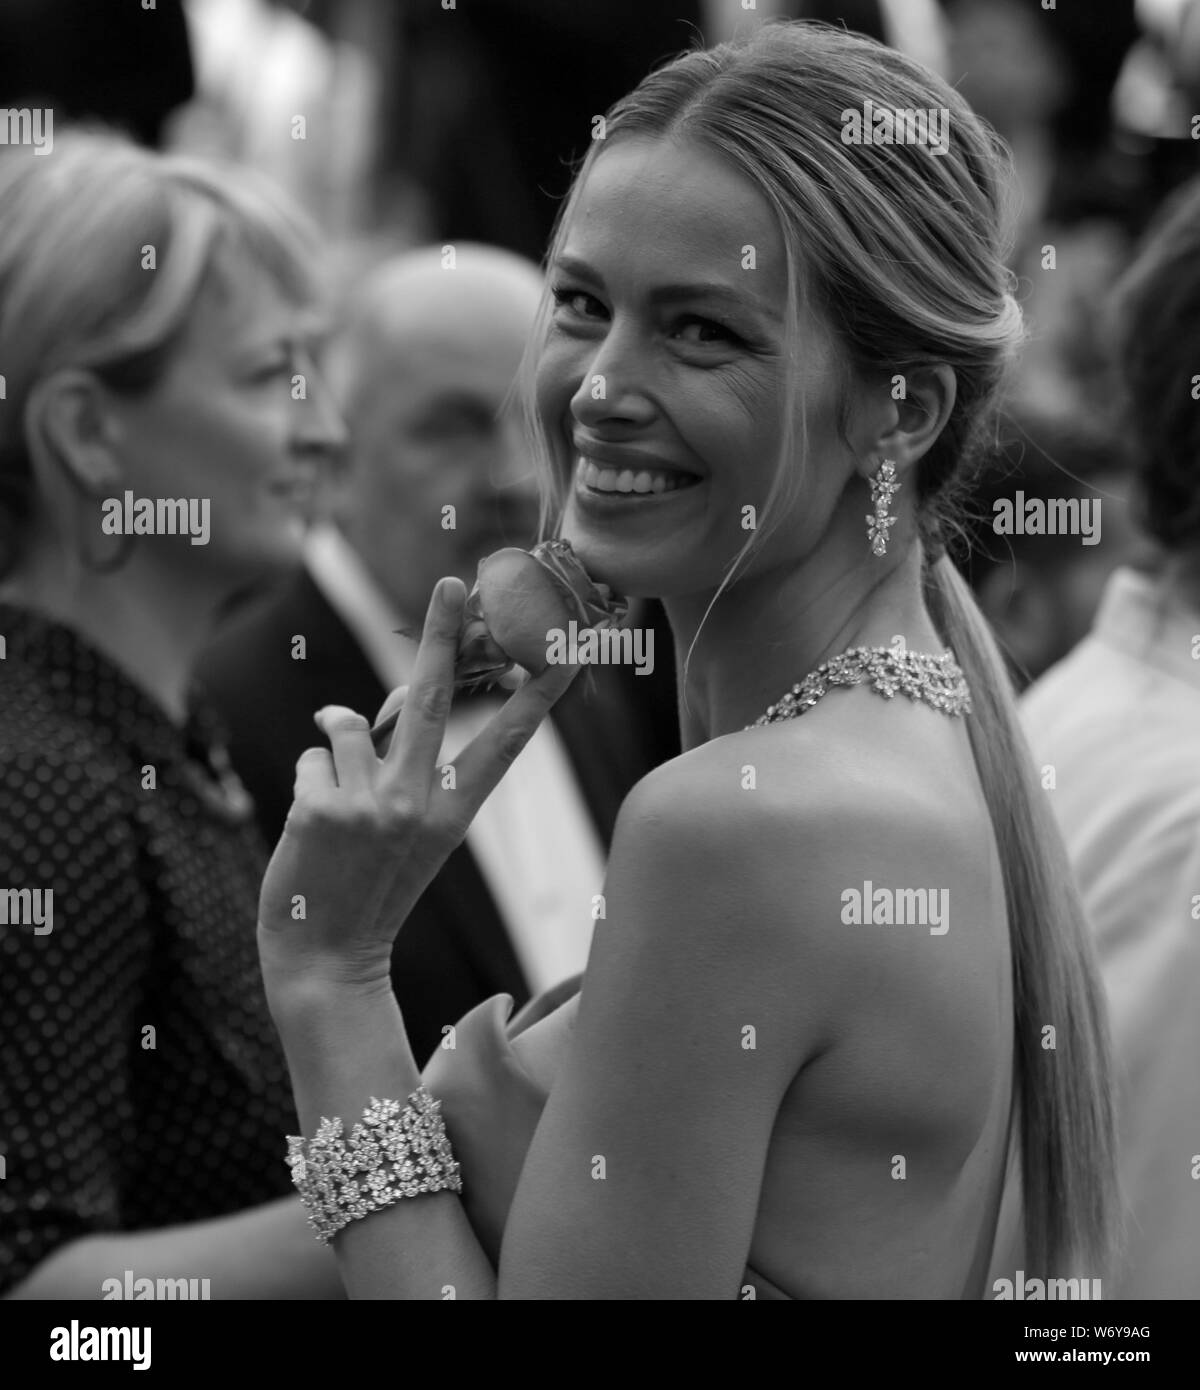 CANNES, Francia - 19 Maggio: Petra Nemcova assiste una vita nascosta lo screening durante la 72a Cannes Film Festival (Mickael Chavet) Foto Stock